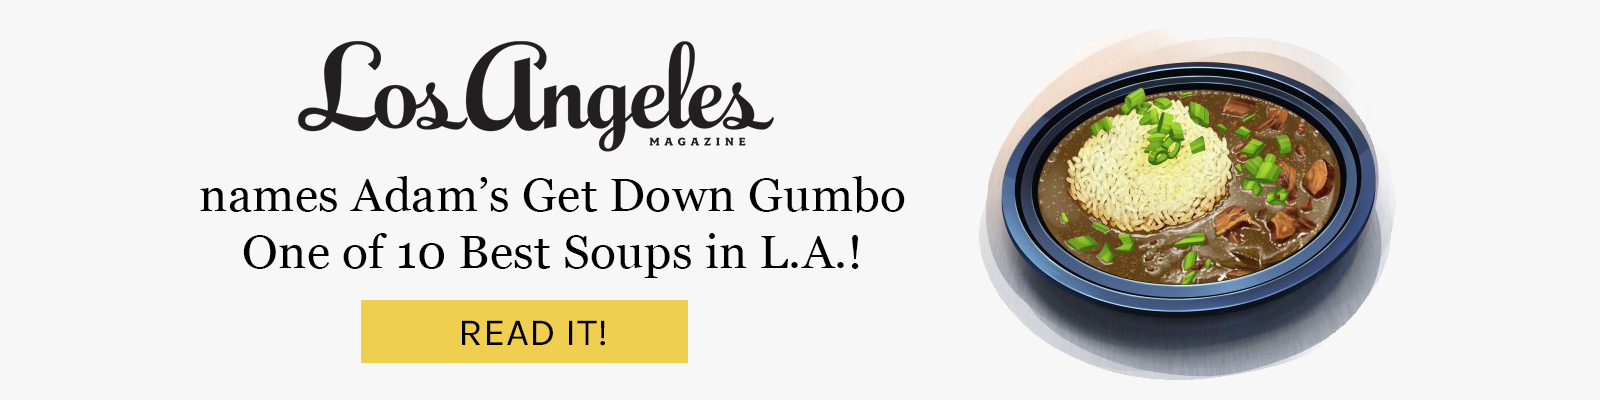 Adam's Get Down Gumbo named one of LA's 10 best soups